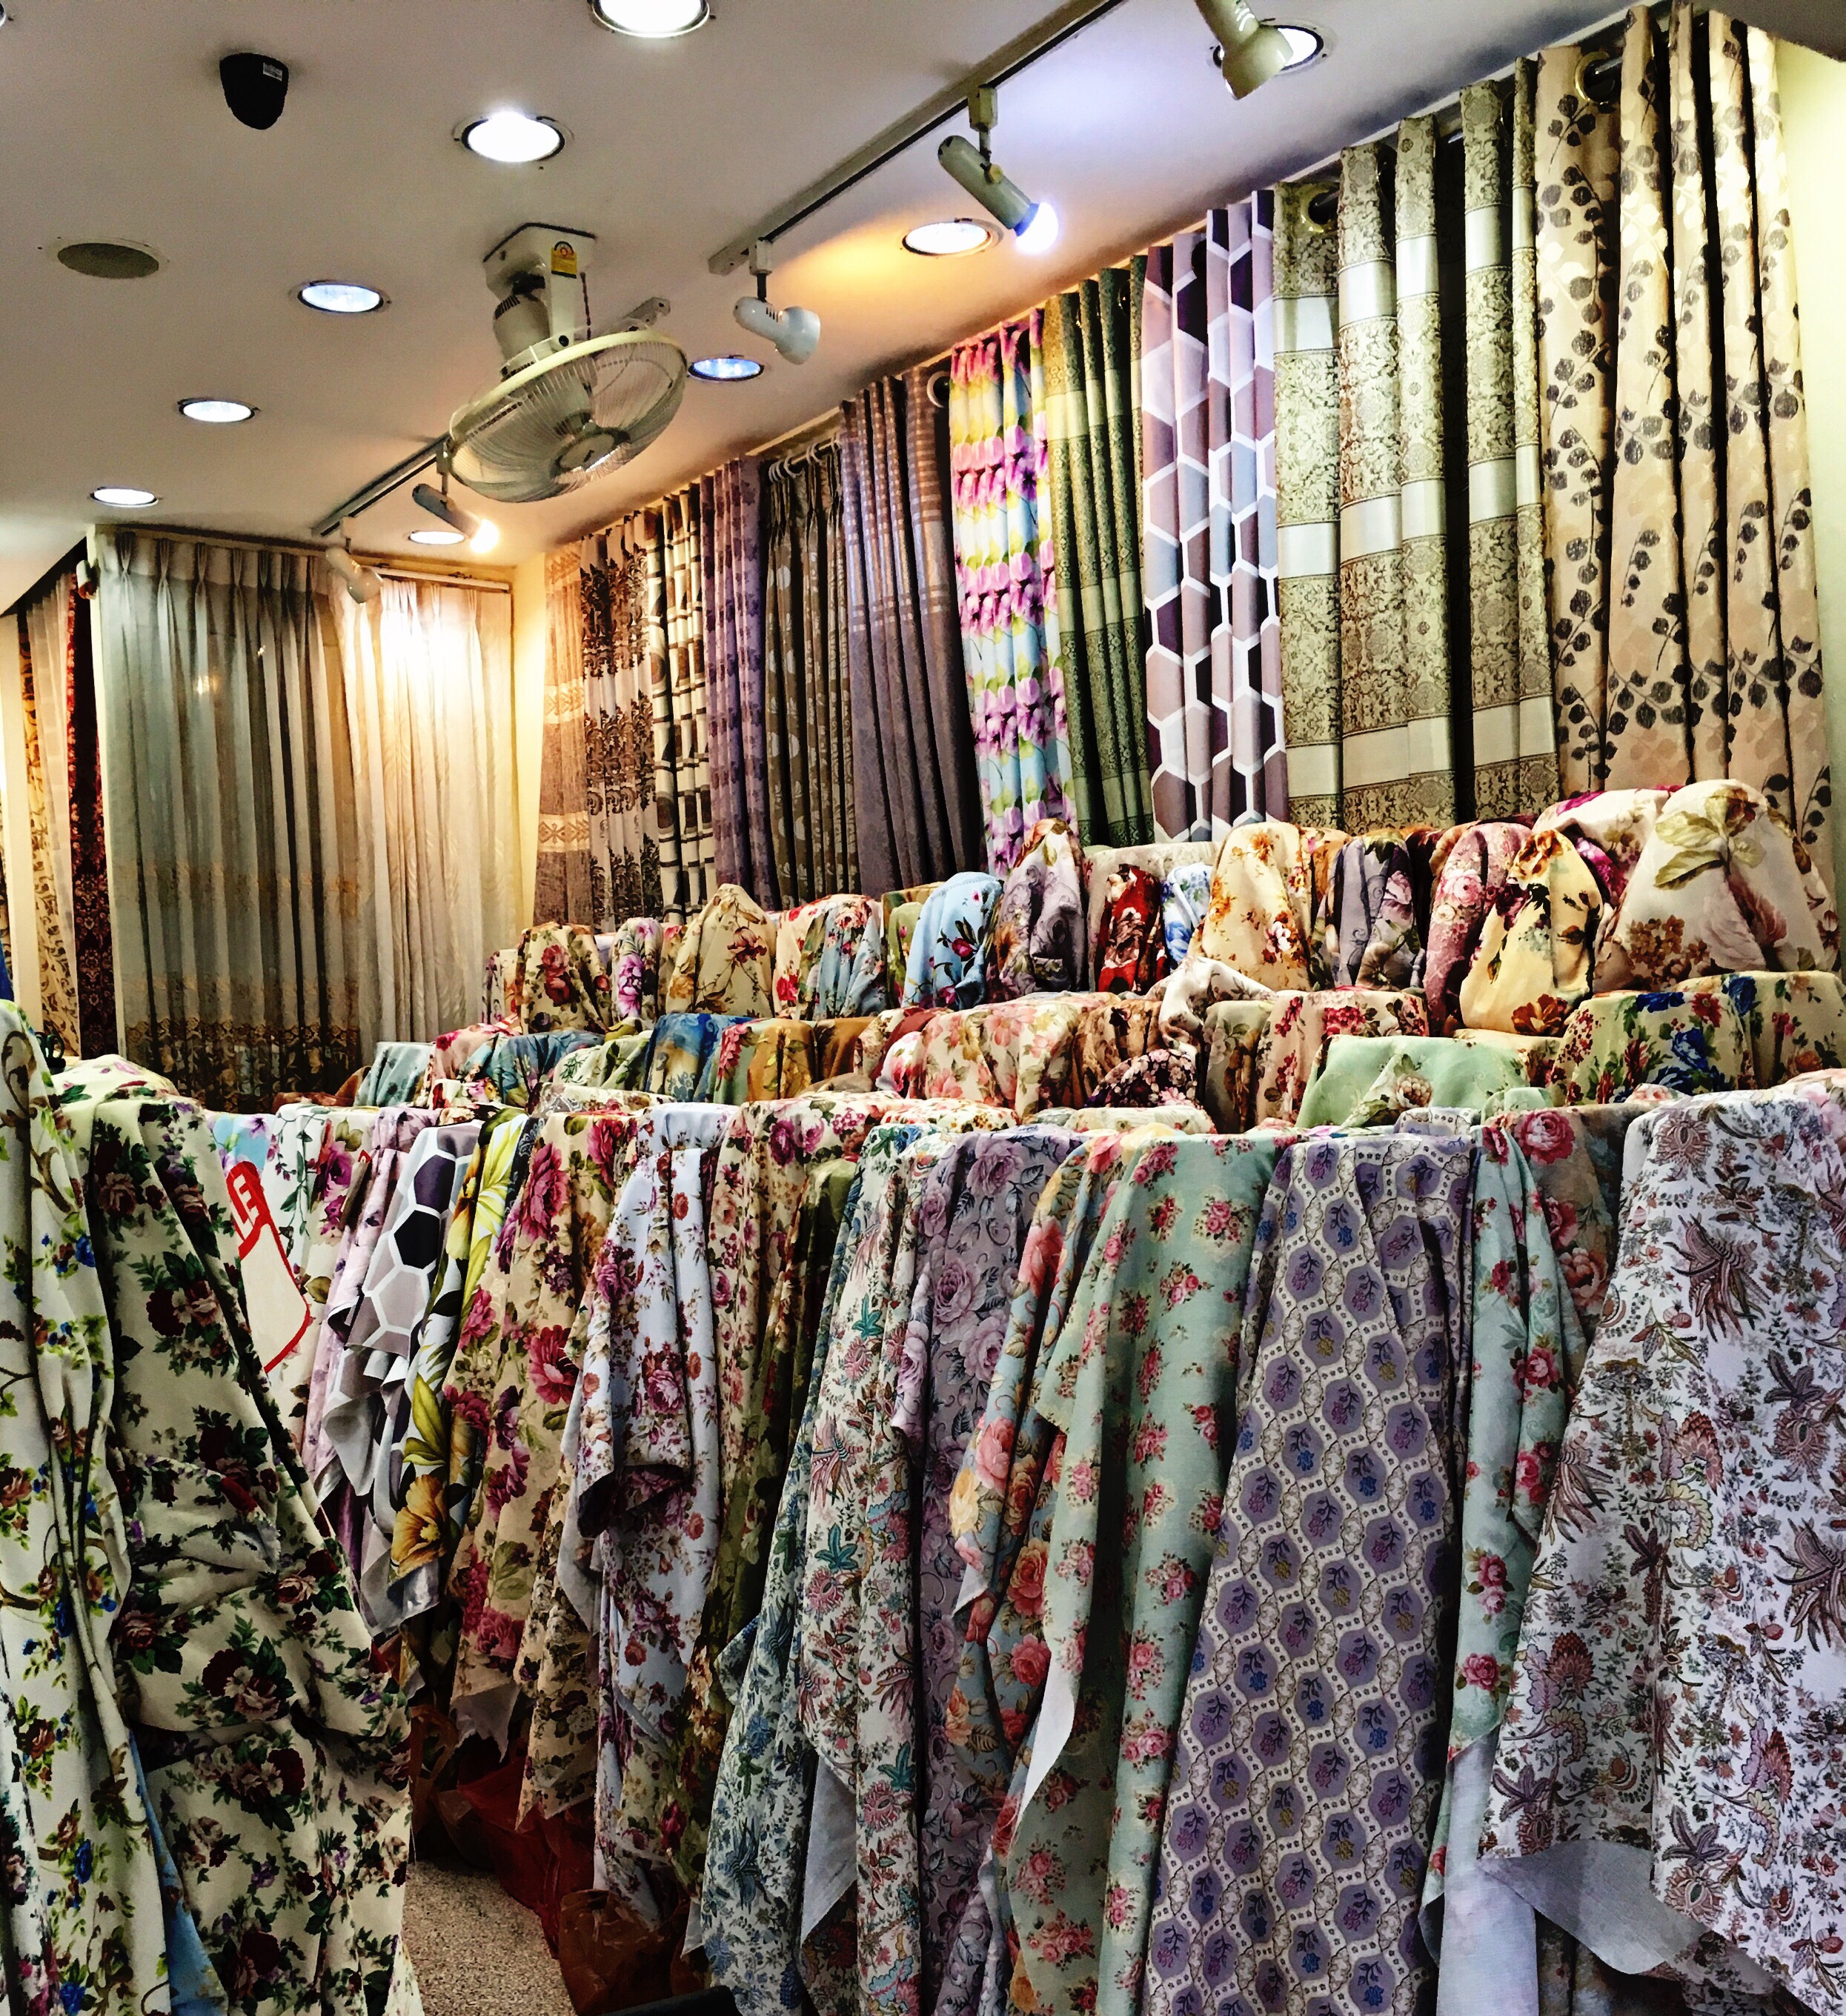 ร้านผ้าม่าน ผ้าตัดเย็บม่าน ผ้าม่านสวย ผ้าทำม่าน พาหุรัด คุณภาพเกรด เอ ราคาถูก ร้านขายผ้าทำม่าน